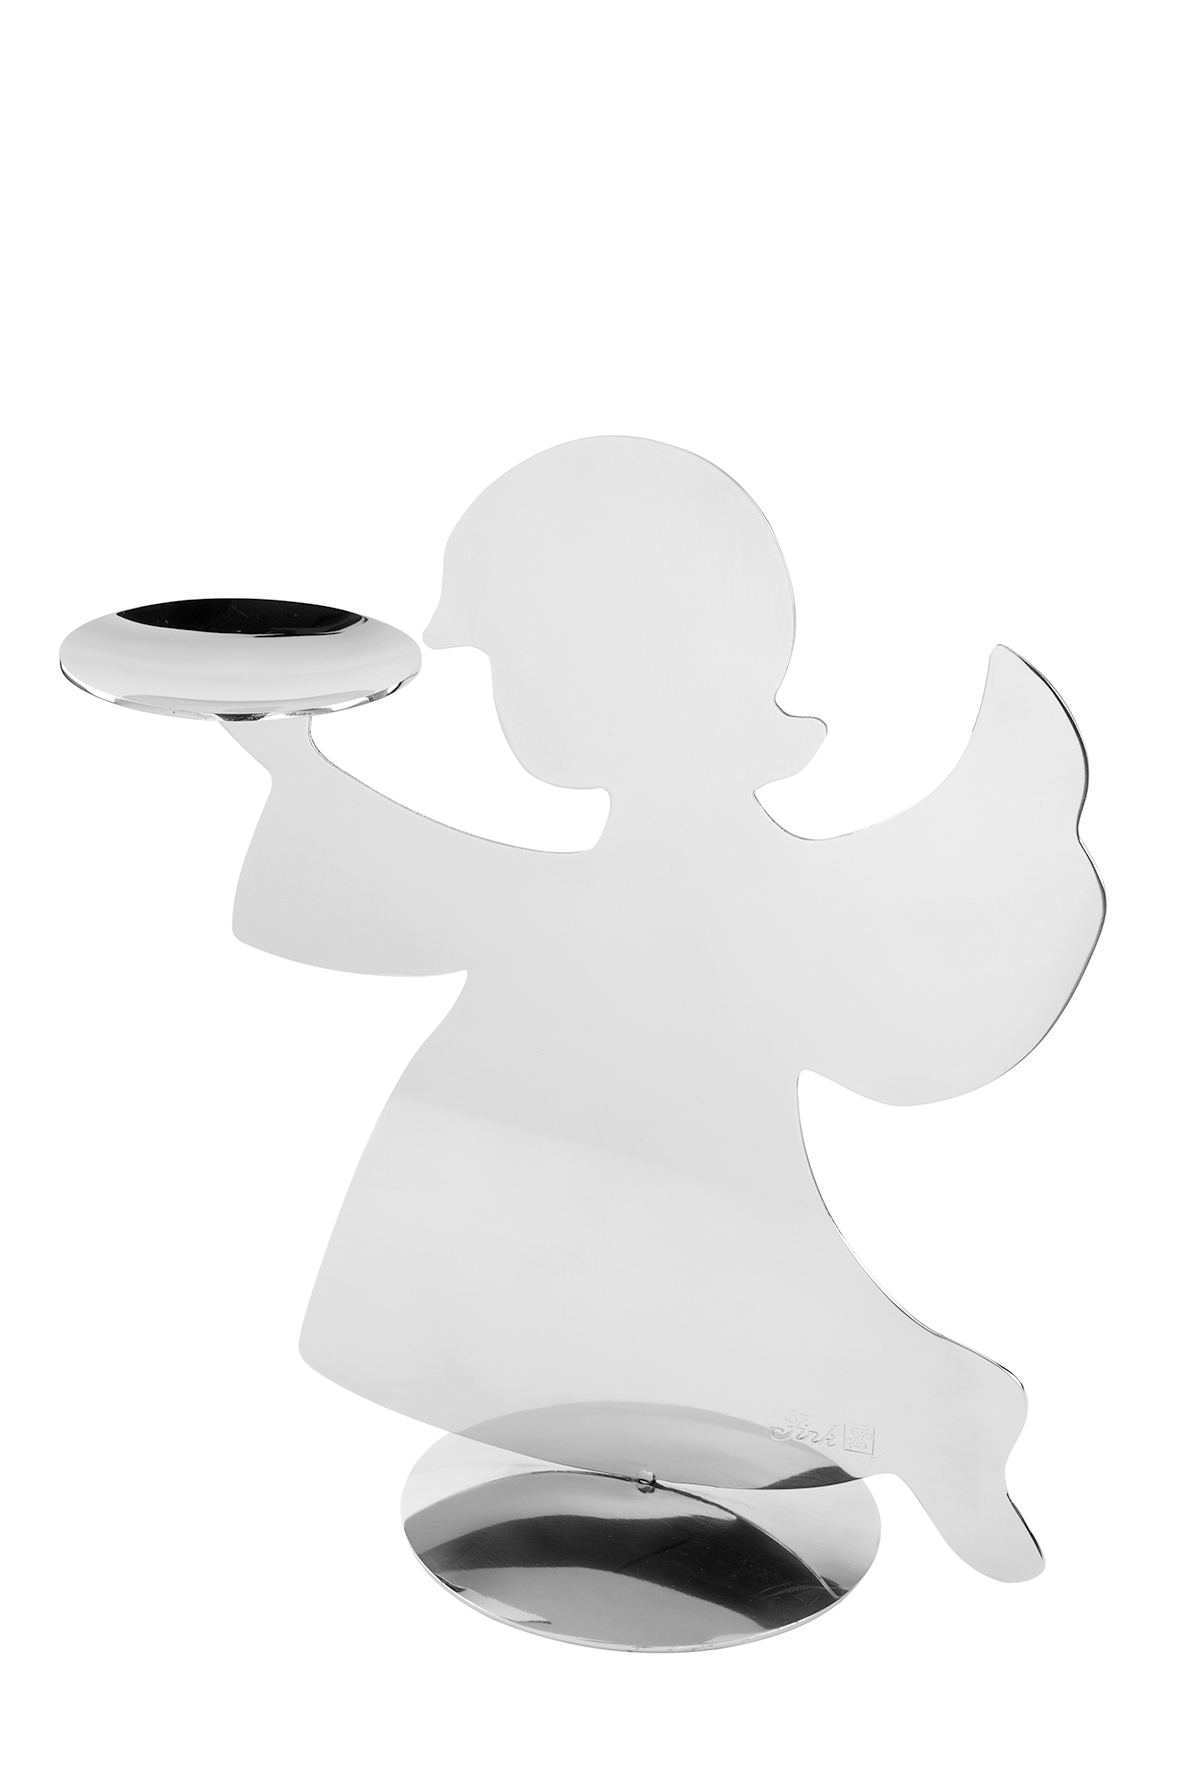 000000012670 Kerzenhalter Engel Figur Silber Teelicht Teelichthalter Weihnachten Holyworker